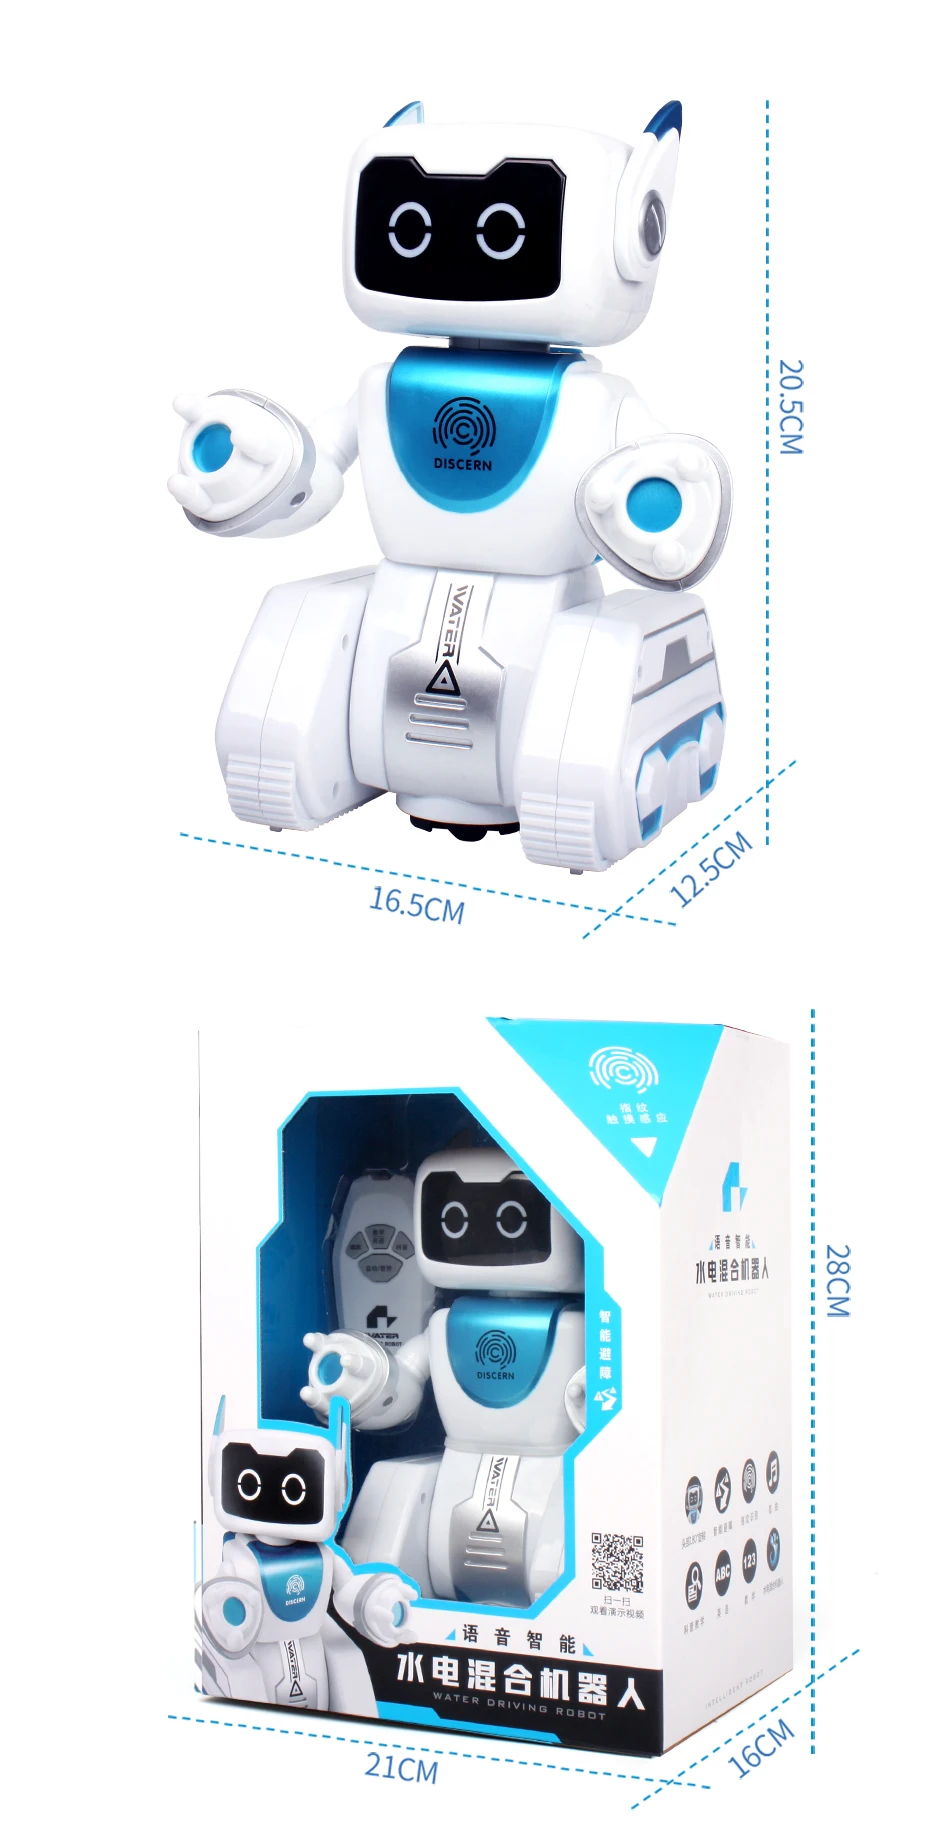 Вода RC умный робот интеллектуальное Программирование дистанционное управление роботика игрушка Biped Гуманоид робот фигурка игрушка для ребенка подарок